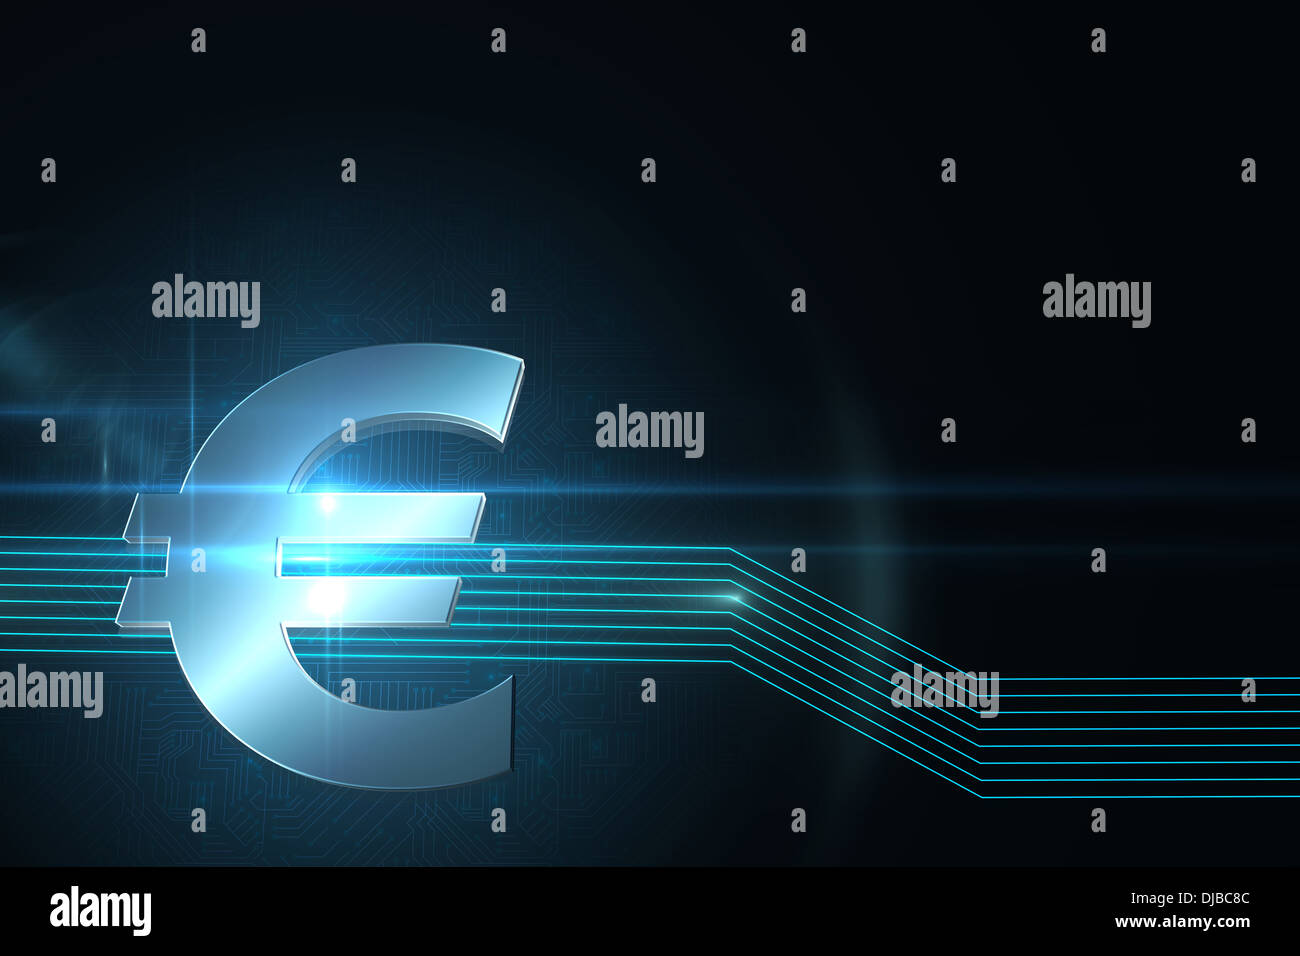 Simbolo dell'euro su un background tecnico Foto Stock